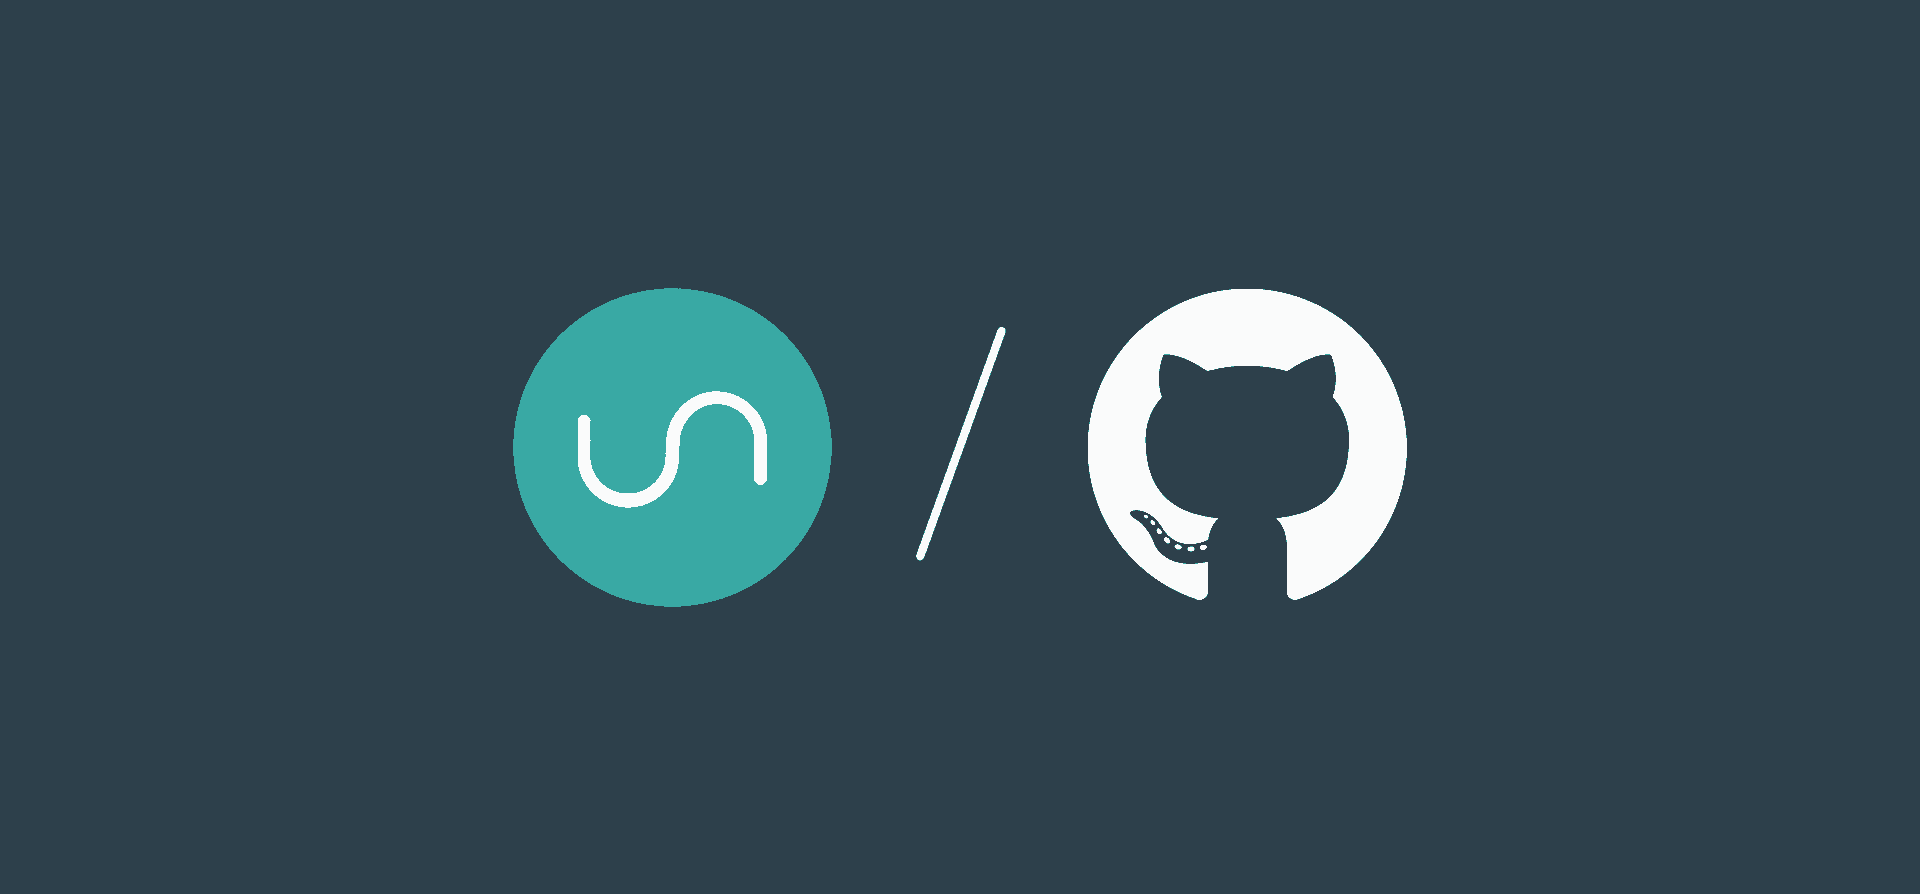 Logos for GitHub and Unito